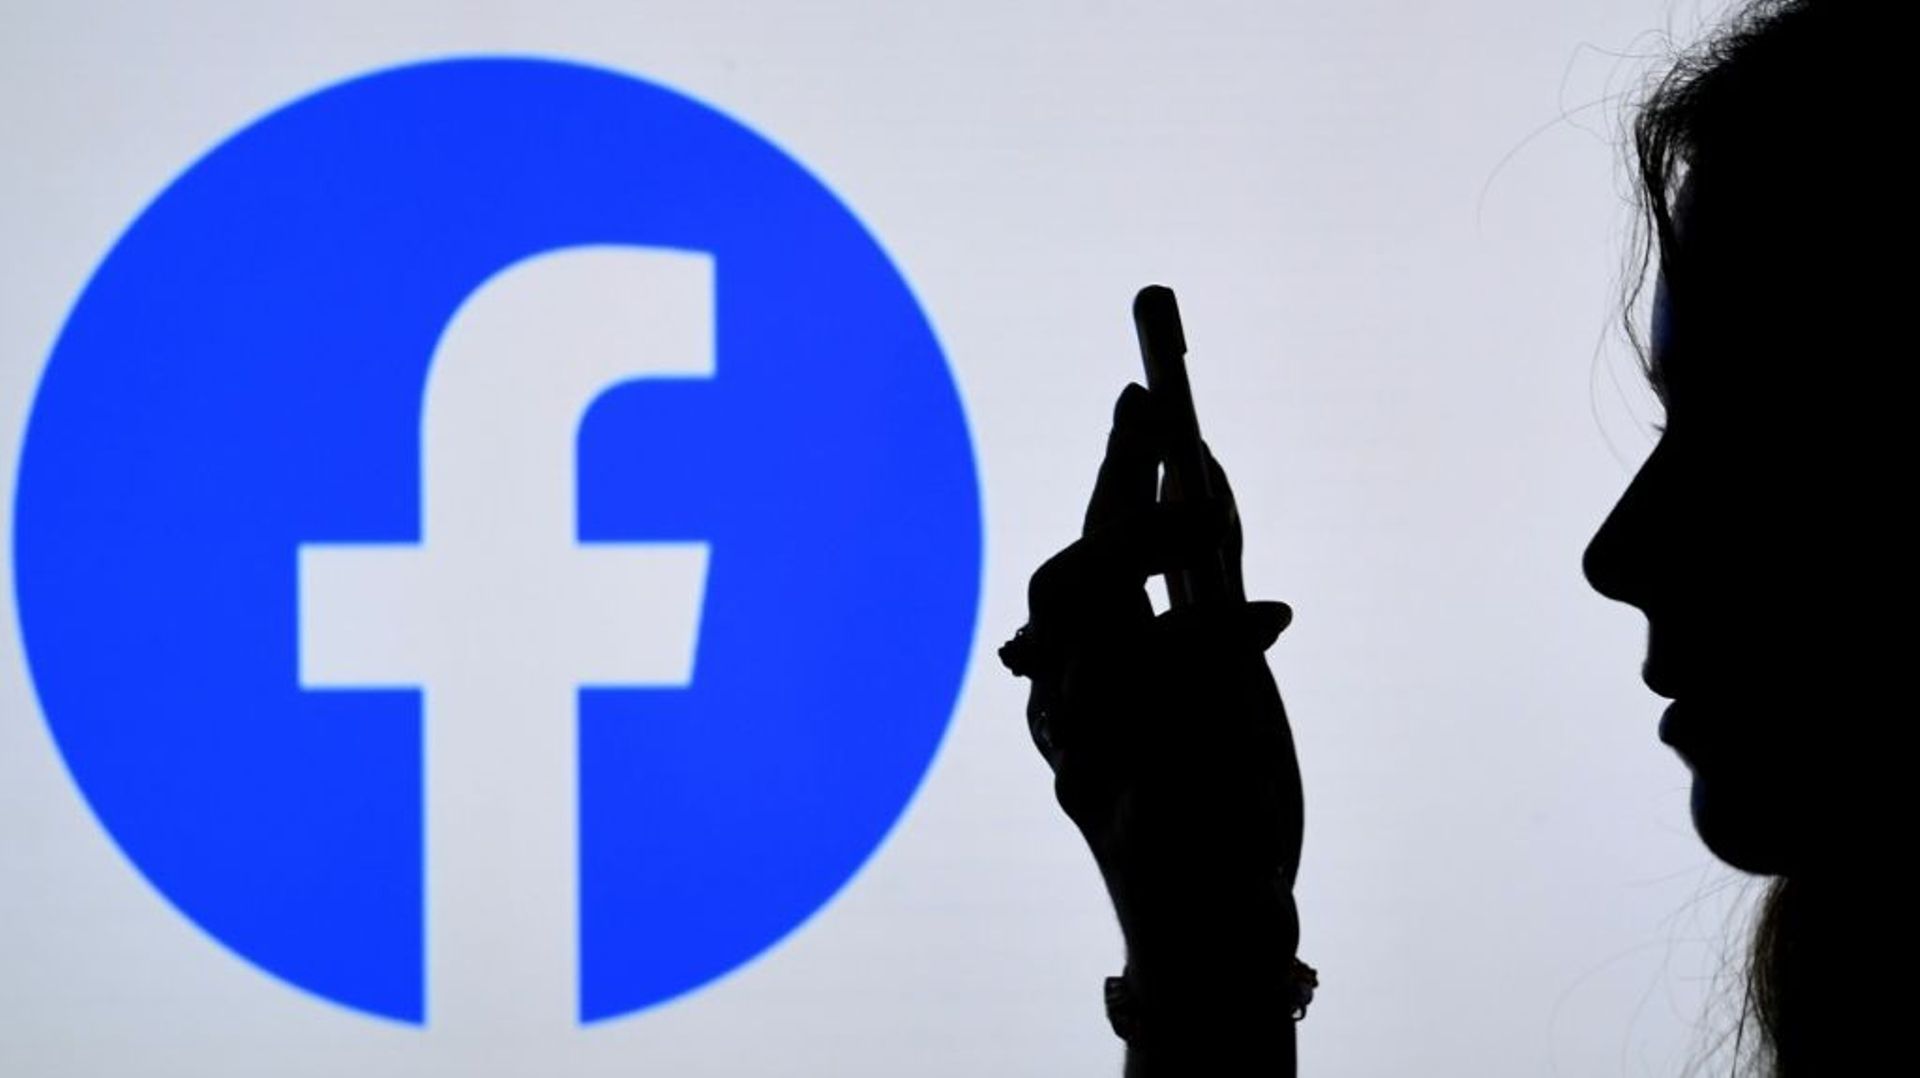 La maison mère Meta du géant américain des réseaux sociaux Facebook a été frappée d’une amende de 17 millions d’euros pour avoir enfreint la réglementation européenne sur la protection des données